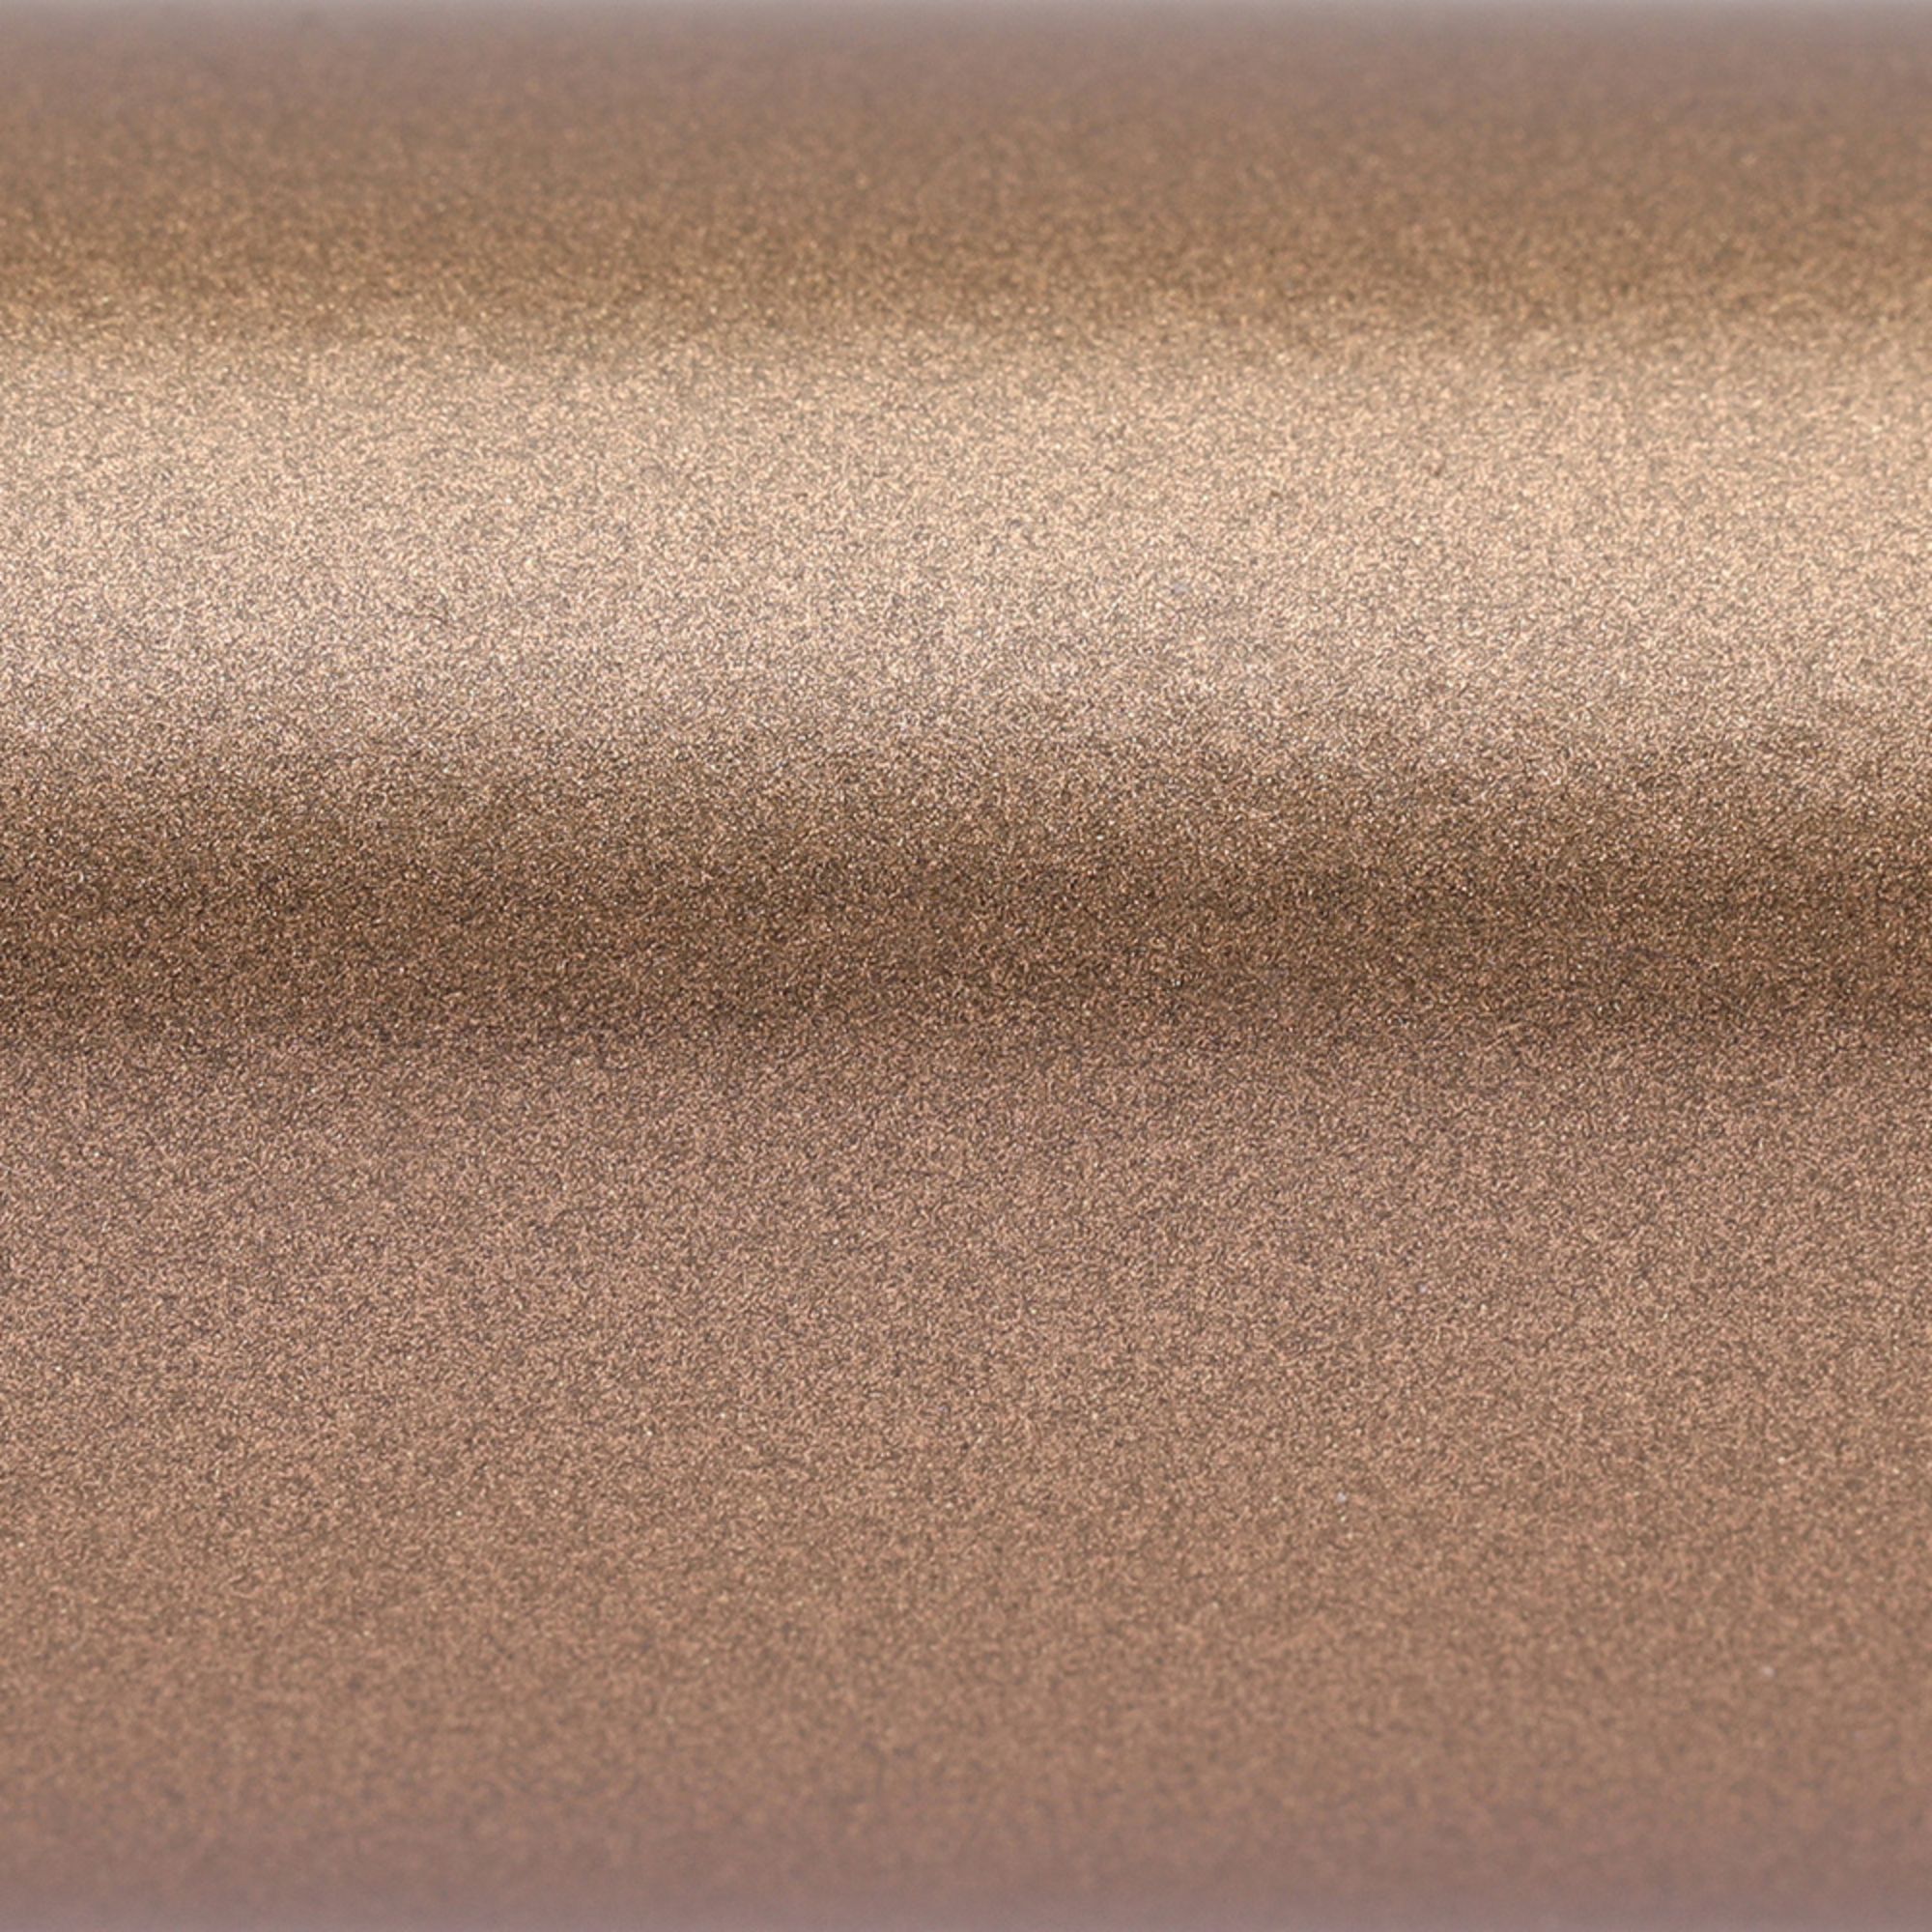 Terma Copper Flat Towel warmer (W)465mm x (H)1244mm